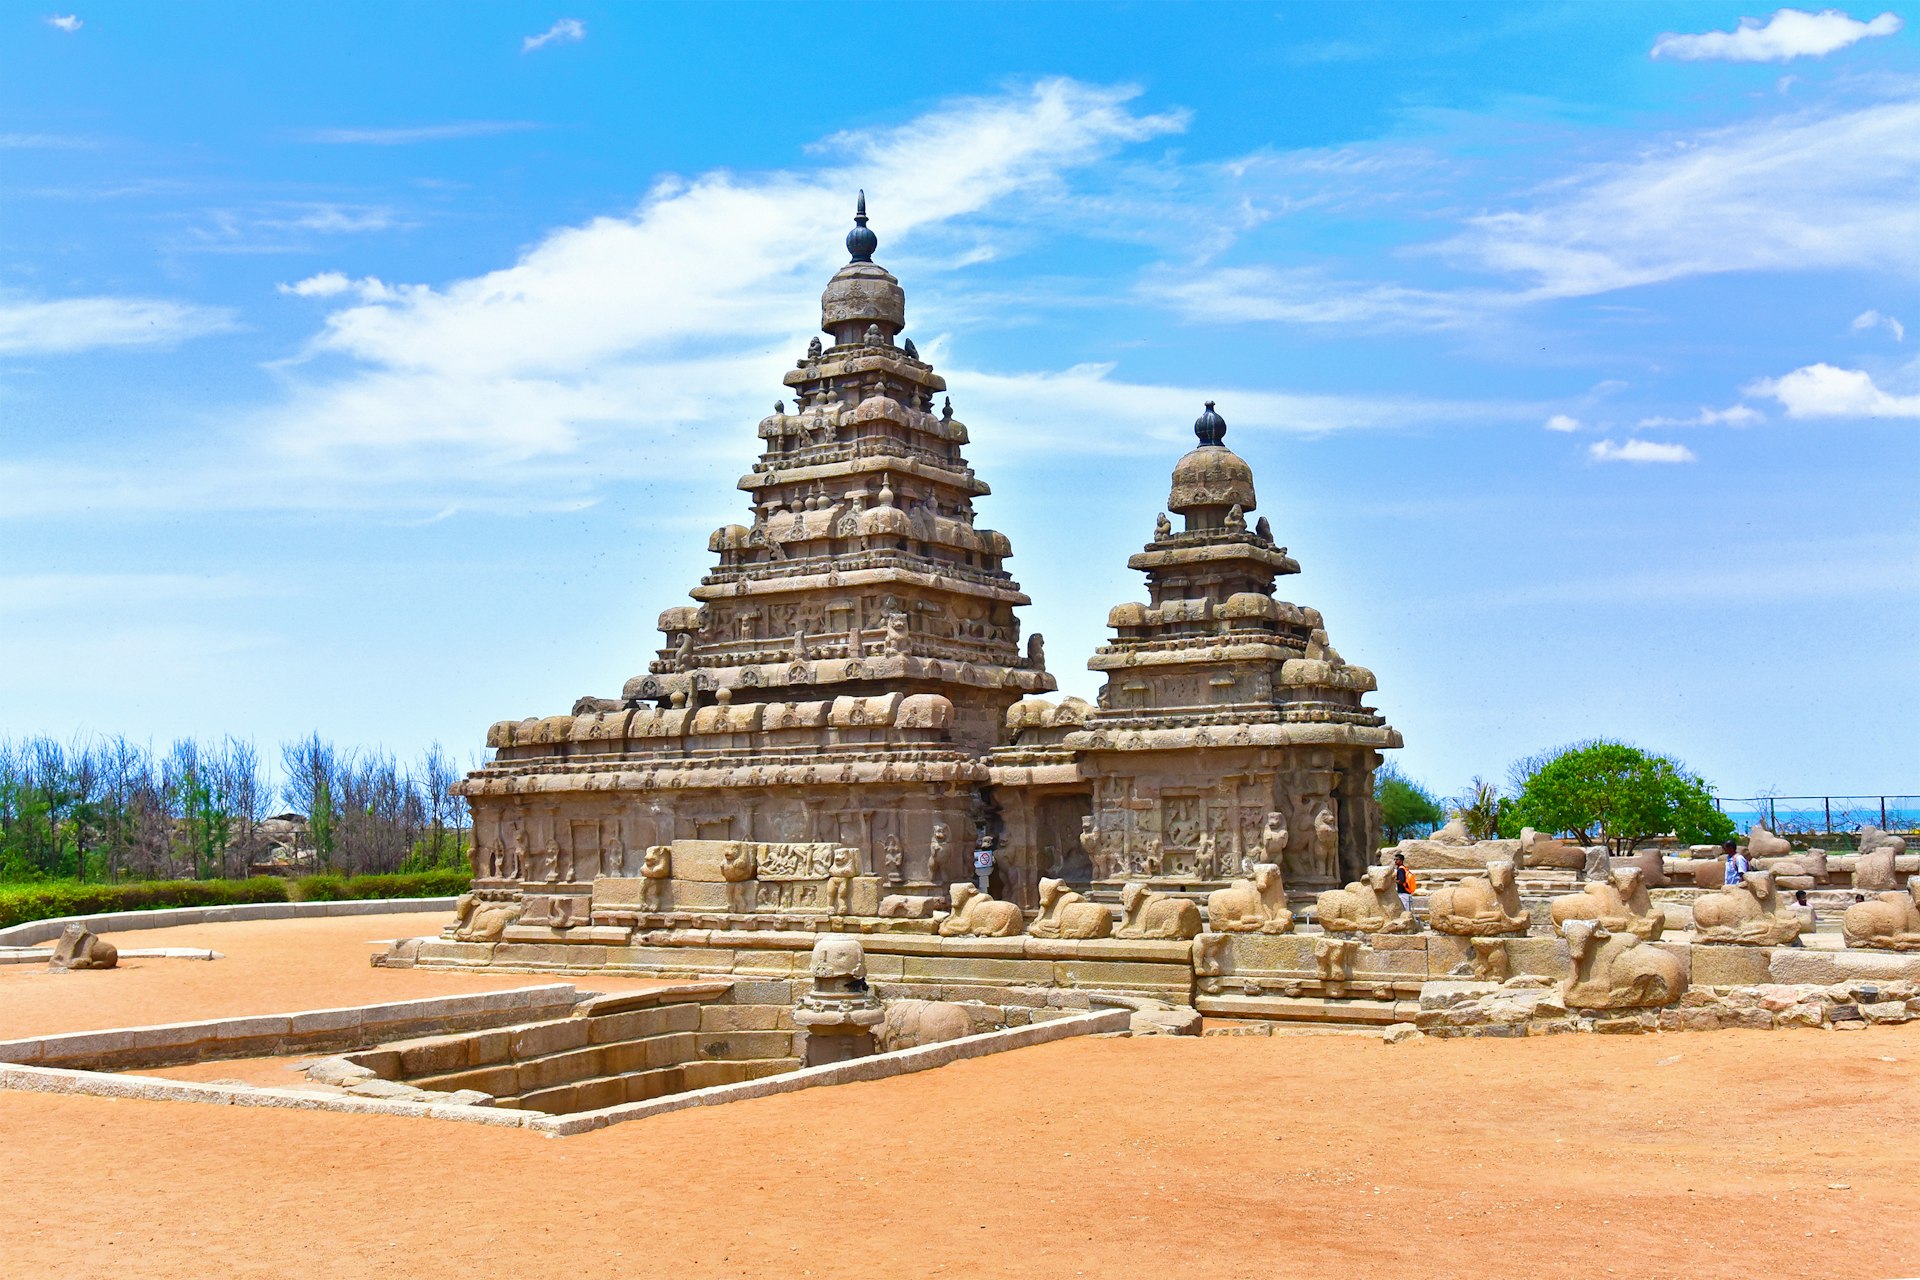 The Shore Temple of Mahabalipuram (Mamallapuram) on a bright sunny day